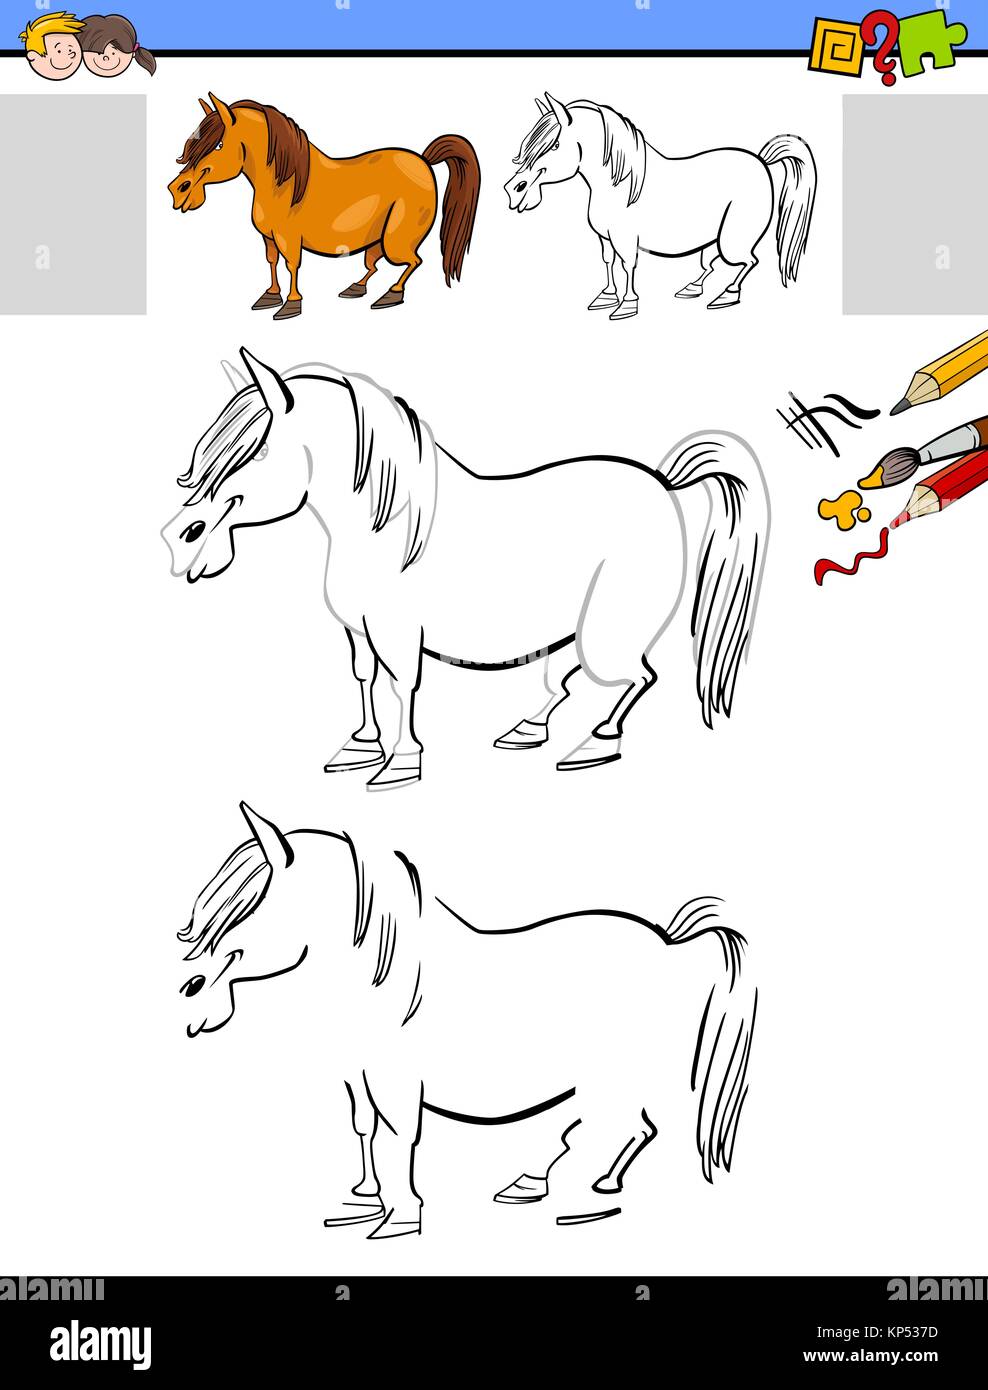 Cartoon Illustration de l'activité éducative de dessin et de coloriage pour les enfants avec un cheval ou poney de caractère des animaux de ferme Illustration de Vecteur